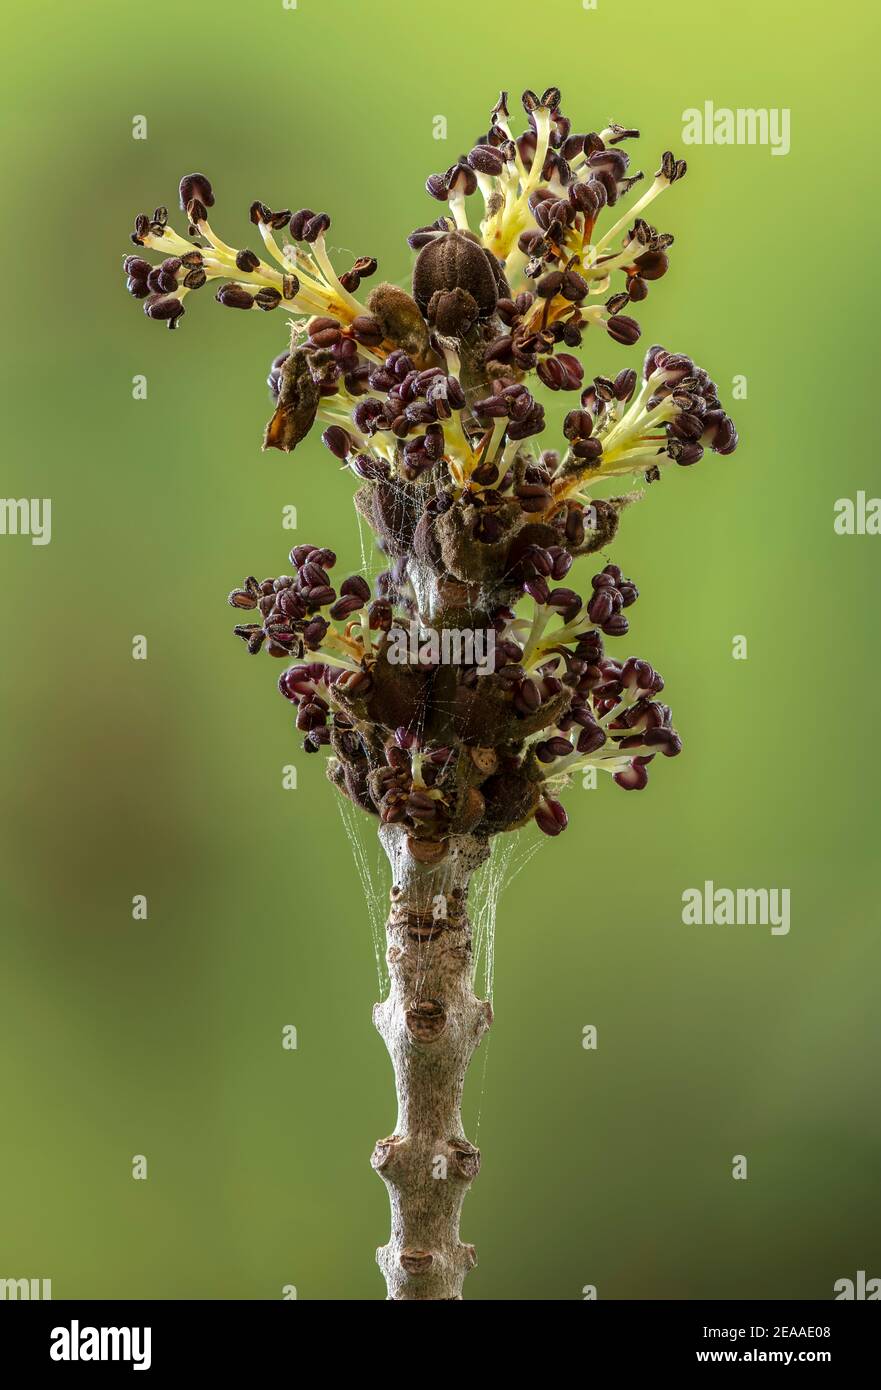 Fleurs ouvrantes de frêne à feuilles étroites, Fraxinus angustifolia, avec étamines visibles. Banque D'Images